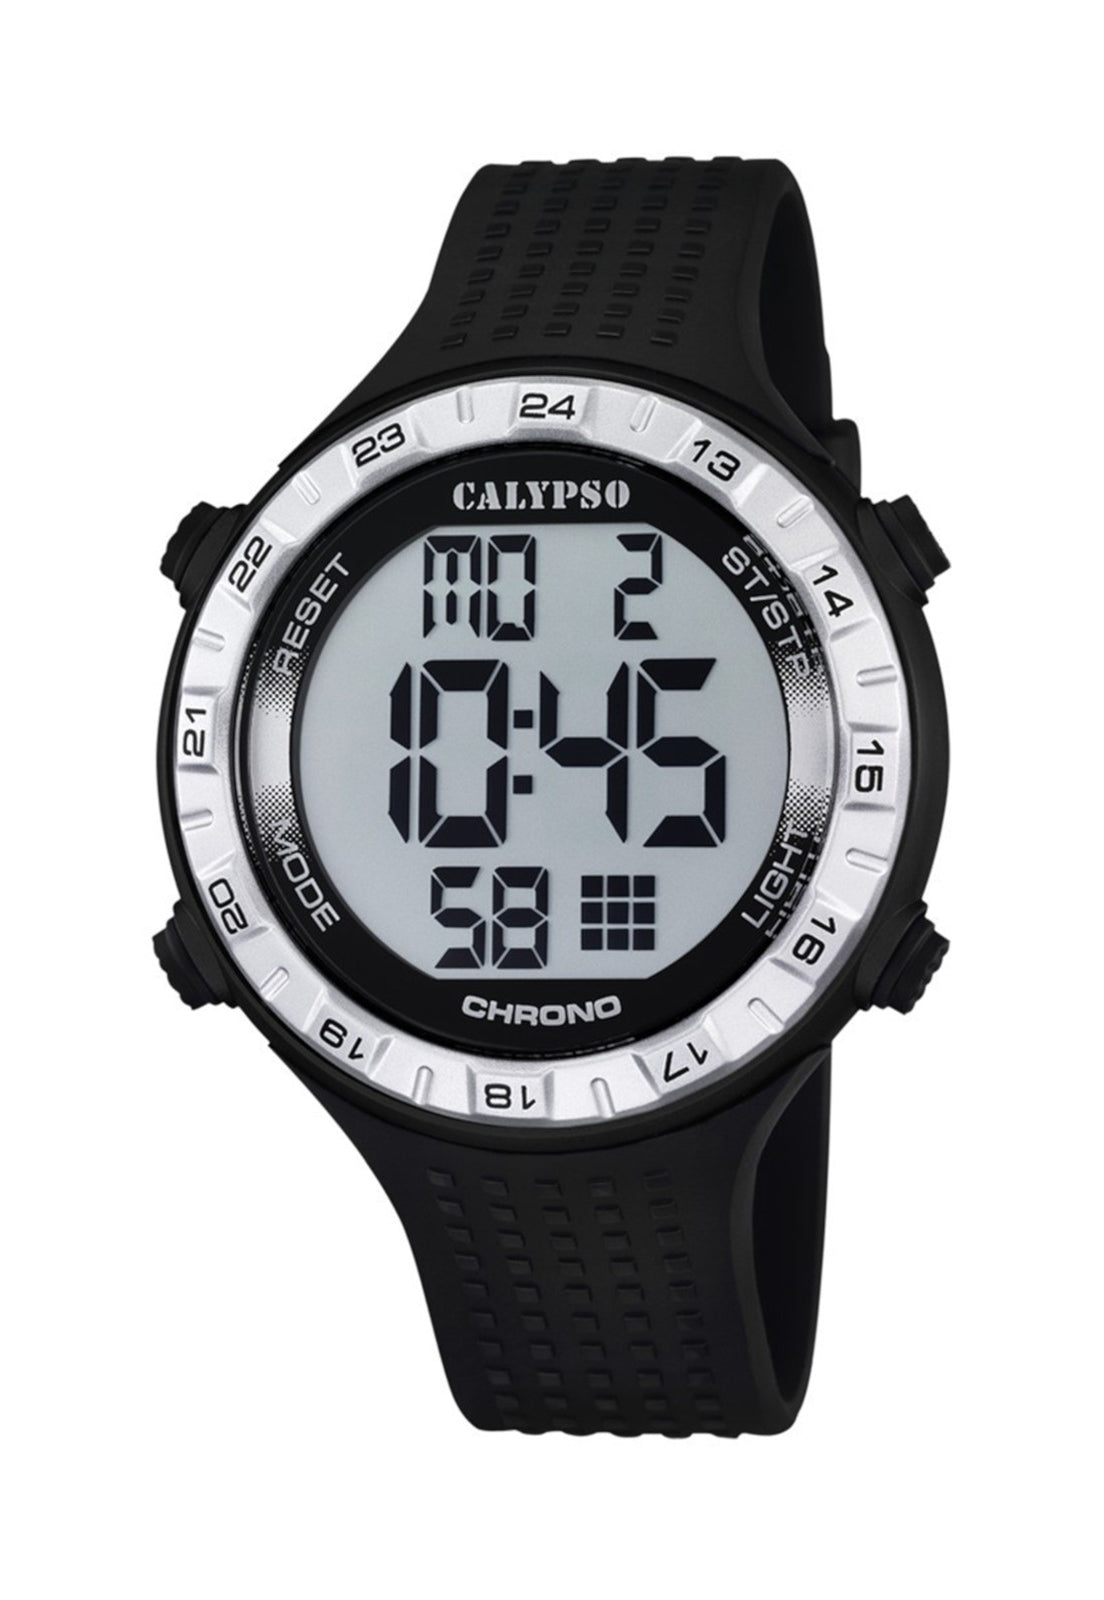 For – Festina Digital Calypso Reloj Man K5663/1 Hombre